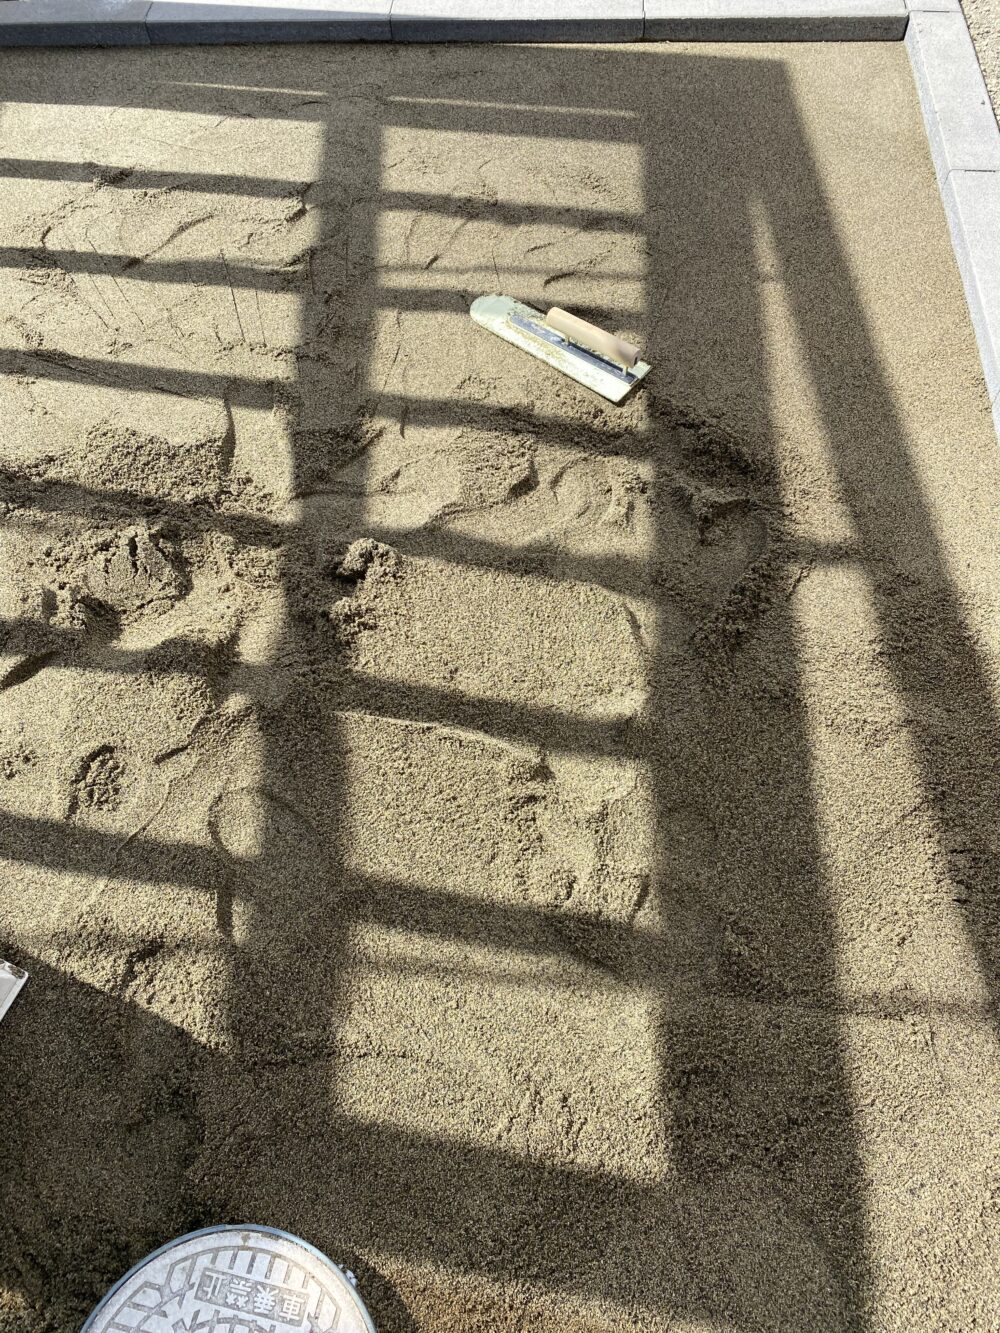 インターロッキング下地の砂敷き